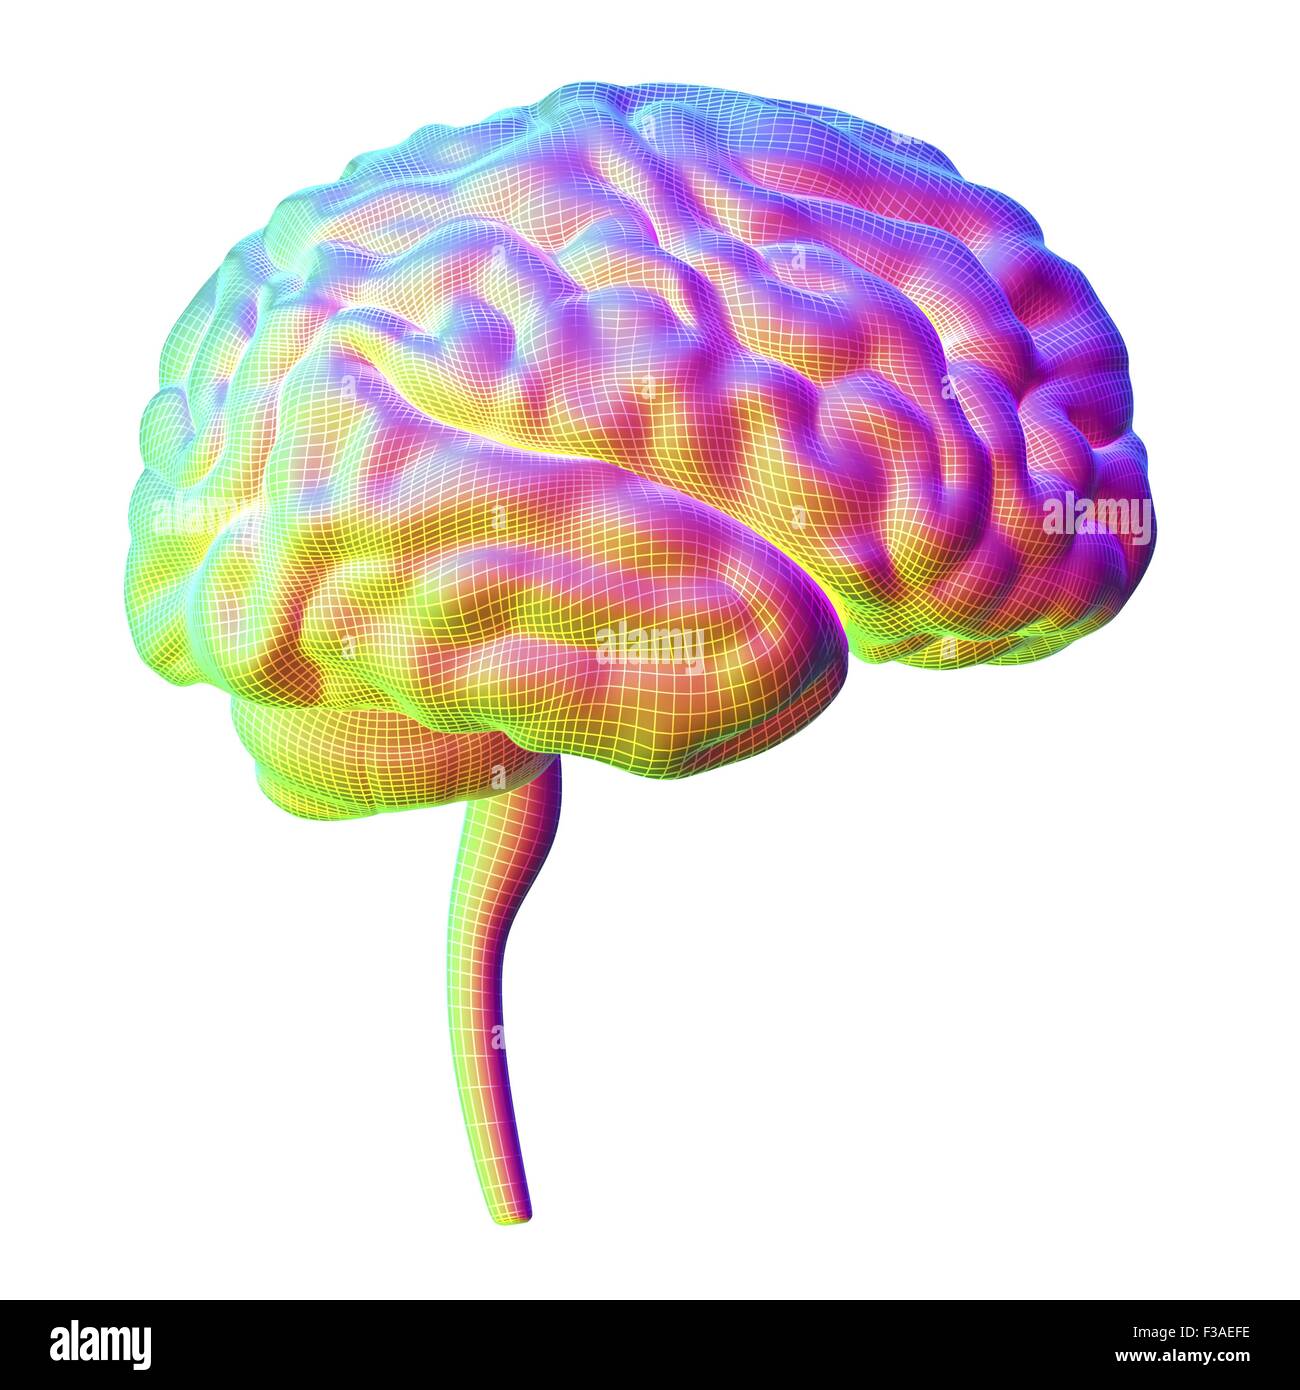 Computer illustrazione del cervello umano, visto dal lato, sovrapposti sono linee tratteggiate. Foto Stock